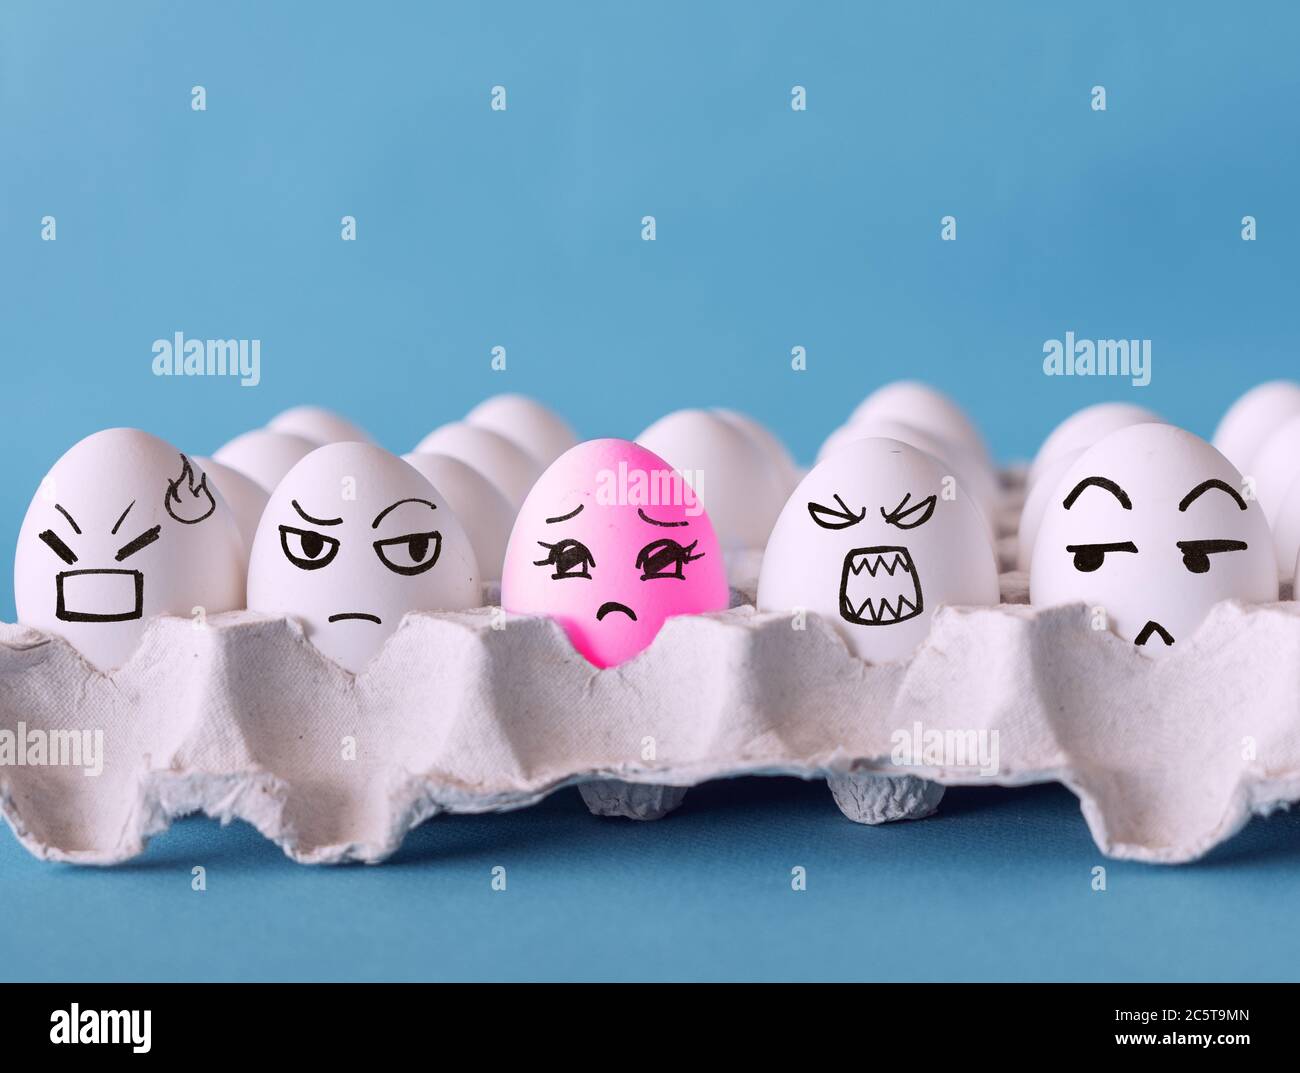 Das seltsame, Gesichter auf den Eiern, Nein zu Rassismus, Diskriminierungskonzept mit blauem Hintergrund Stockfoto